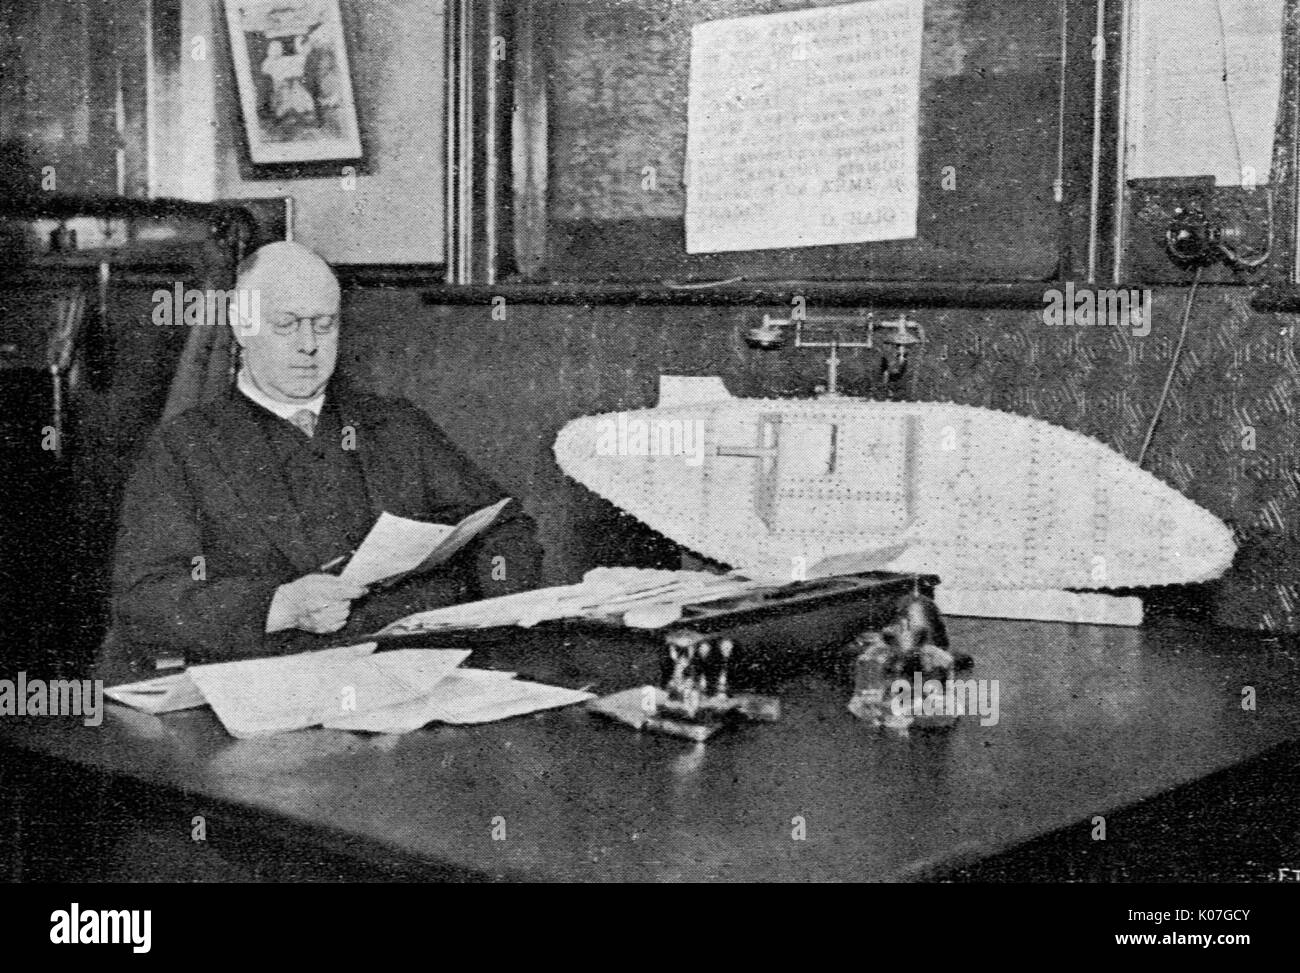 Sir William Tritton Ashbee (1875 - 1946), ingeniero militar que fue en gran medida responsable por la invención del tanque durante la Primera Guerra Mundial Fecha: 1917 Foto de stock